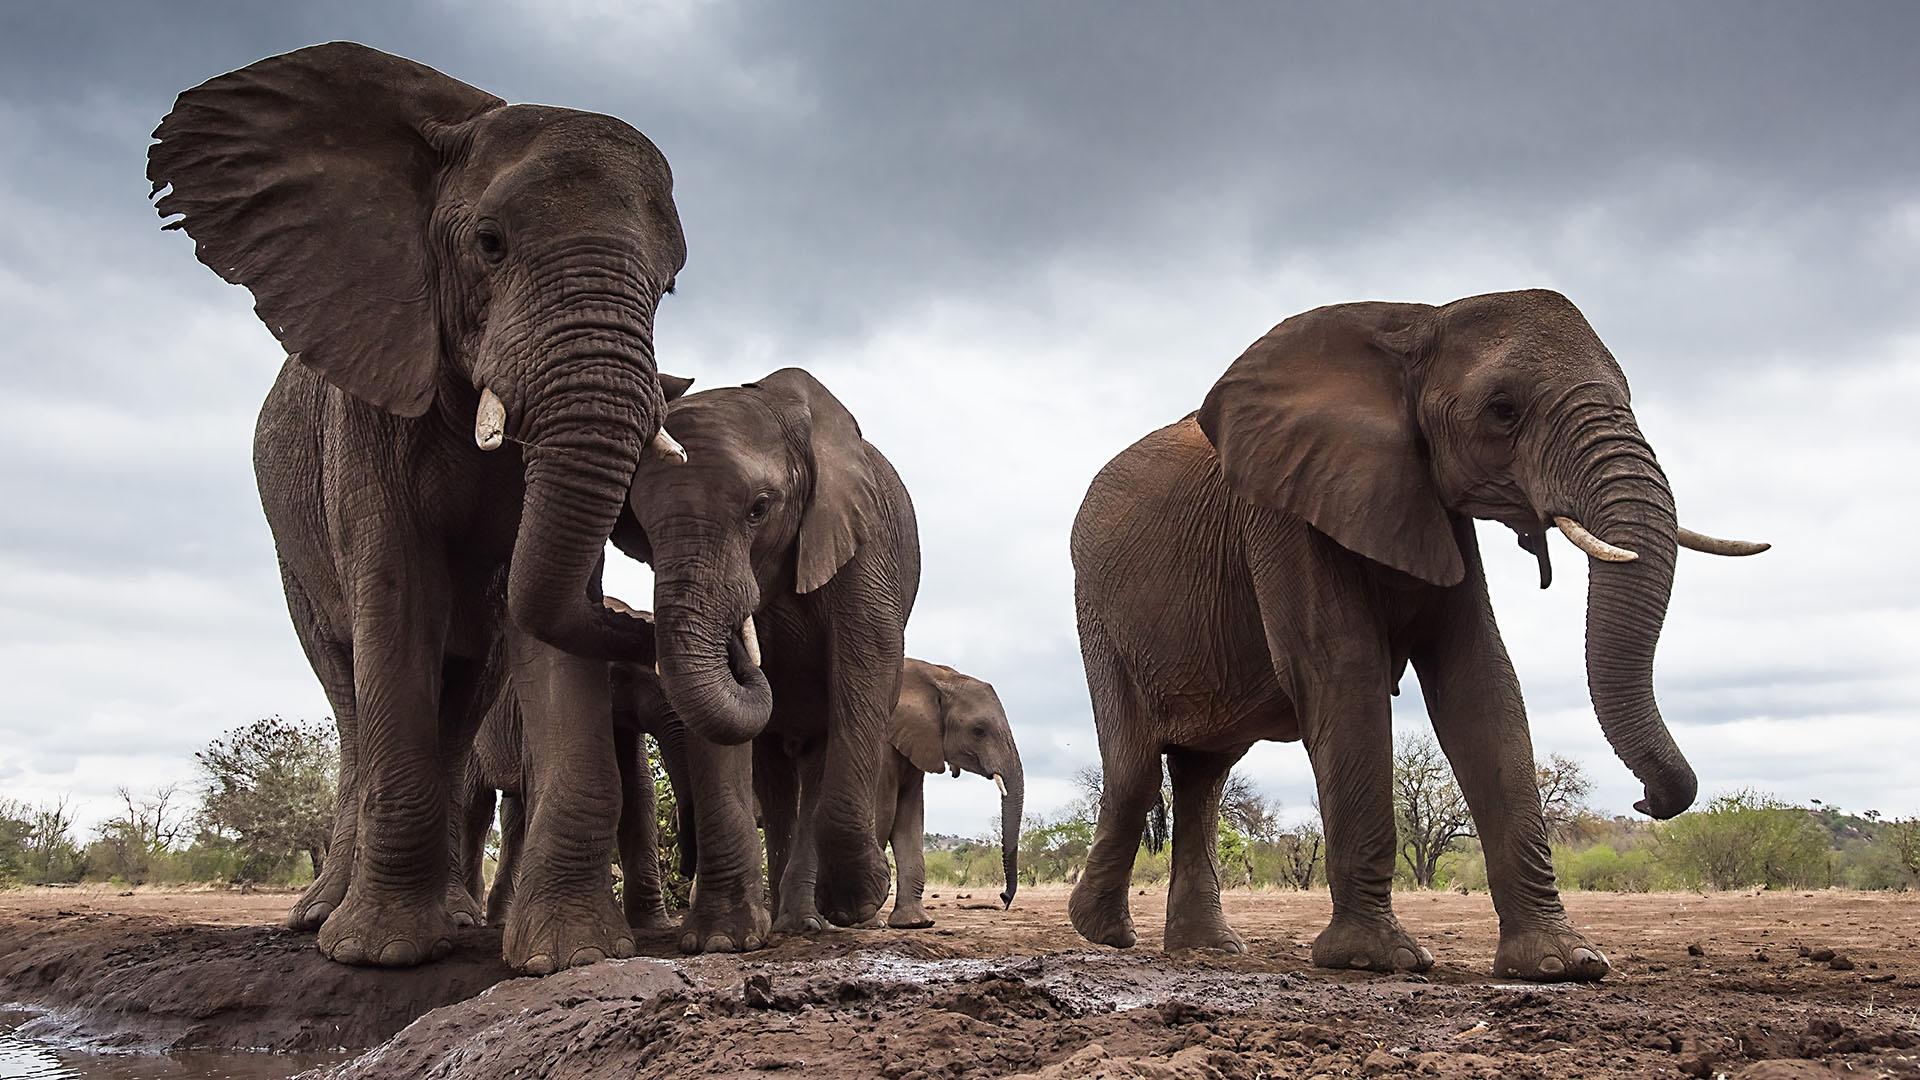 Image of African elephants